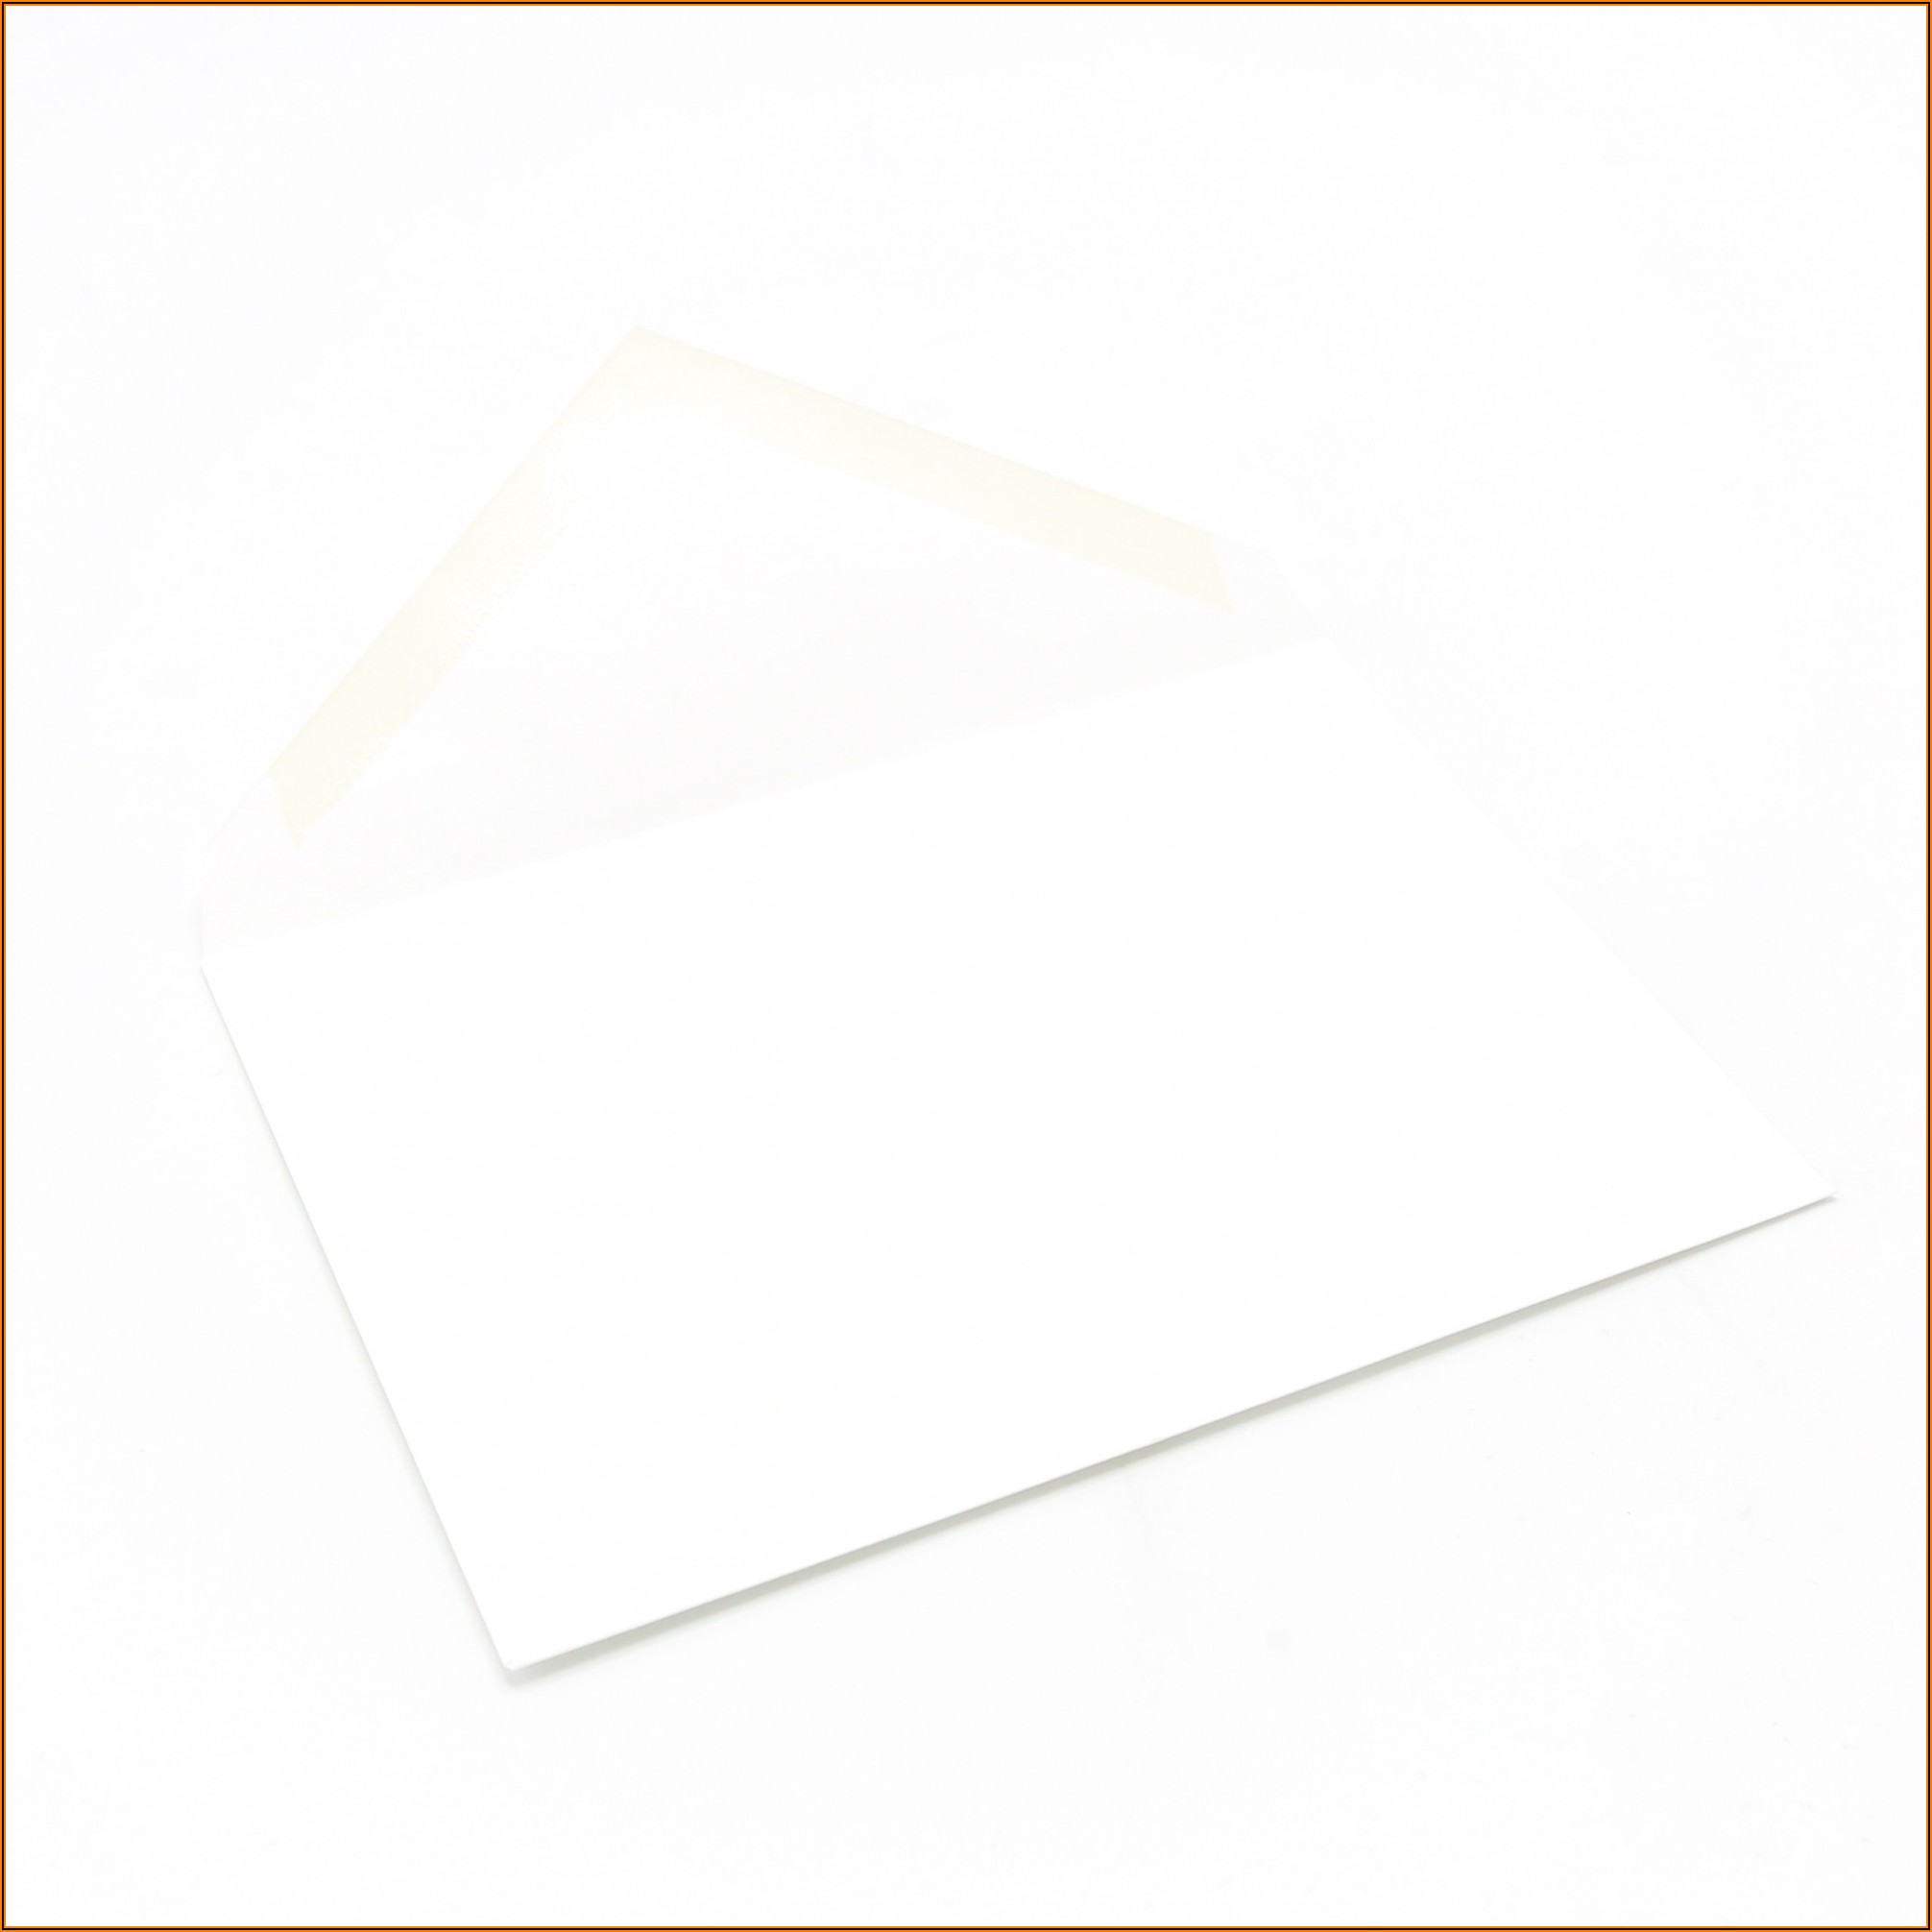 Baronial Envelope Size 5 3 4